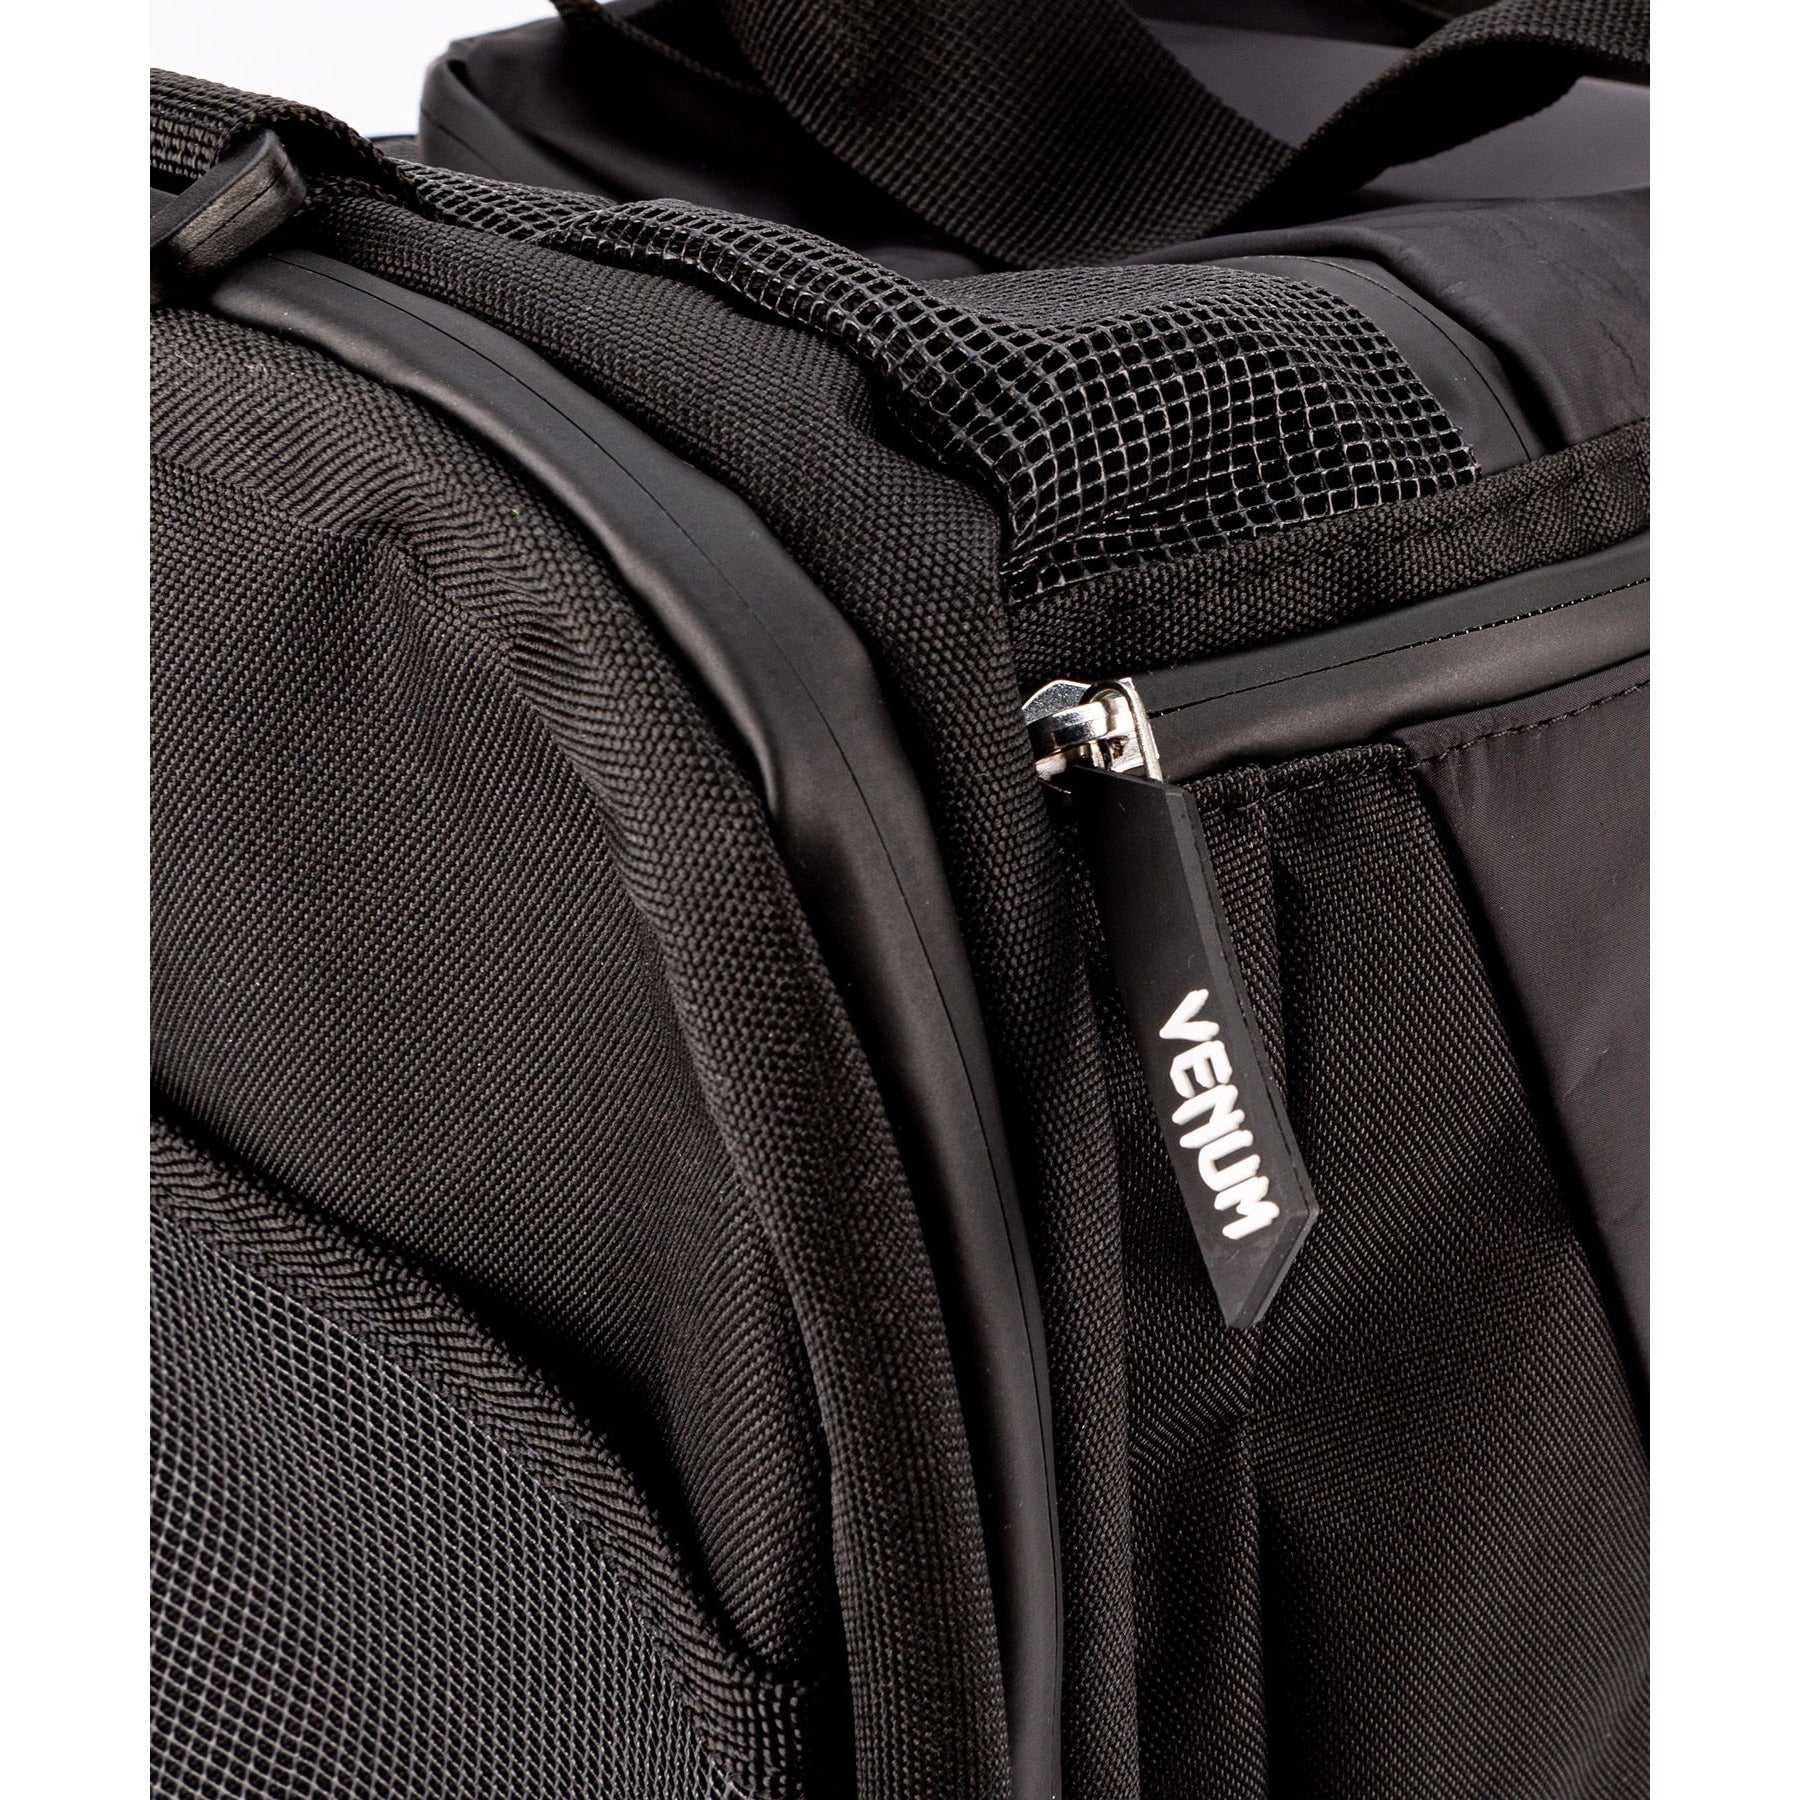 Venum zip and bag detail